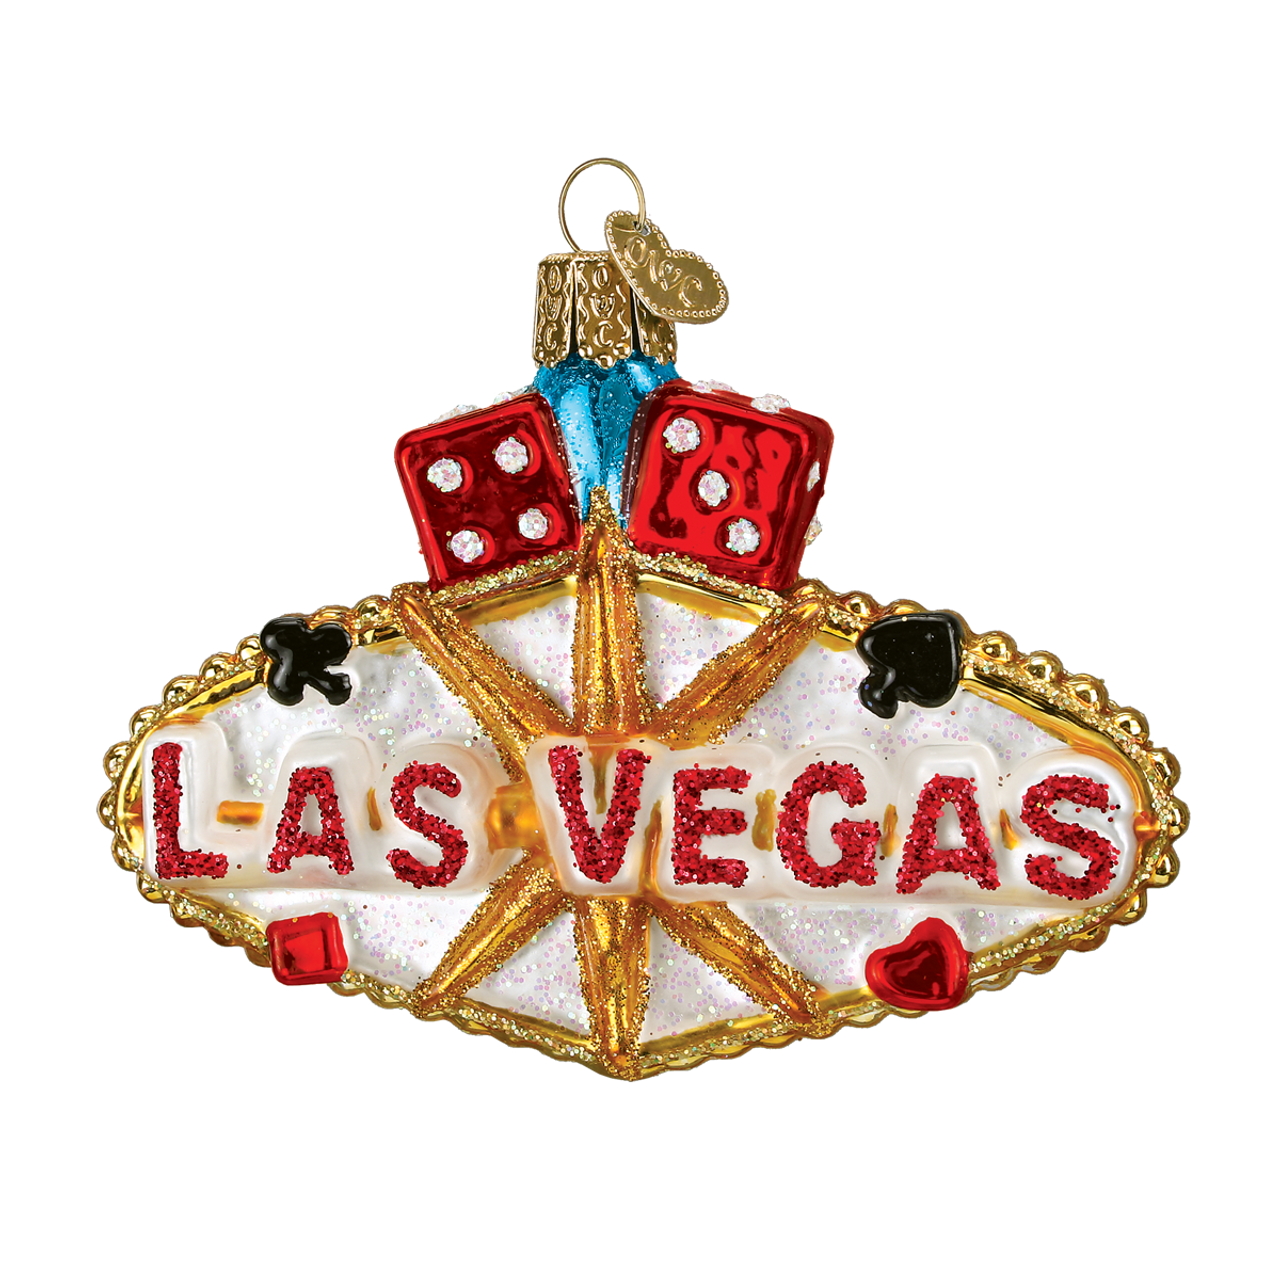 Las Vegas Sign PNG Free Image